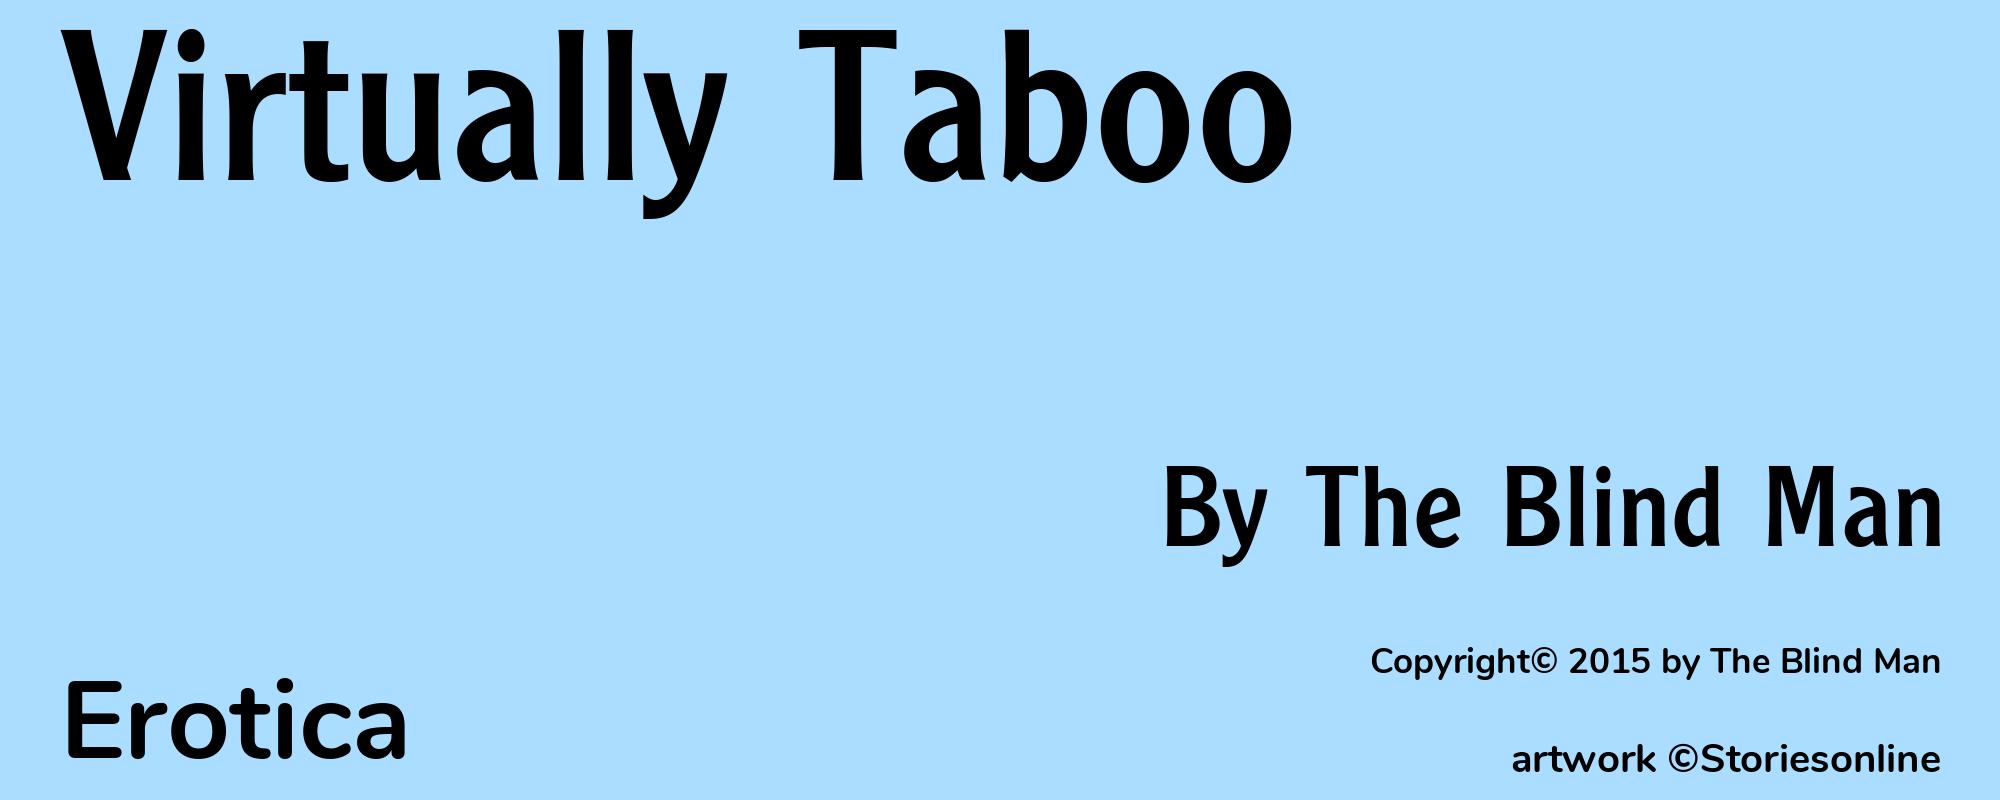 Virtually Taboo - Cover